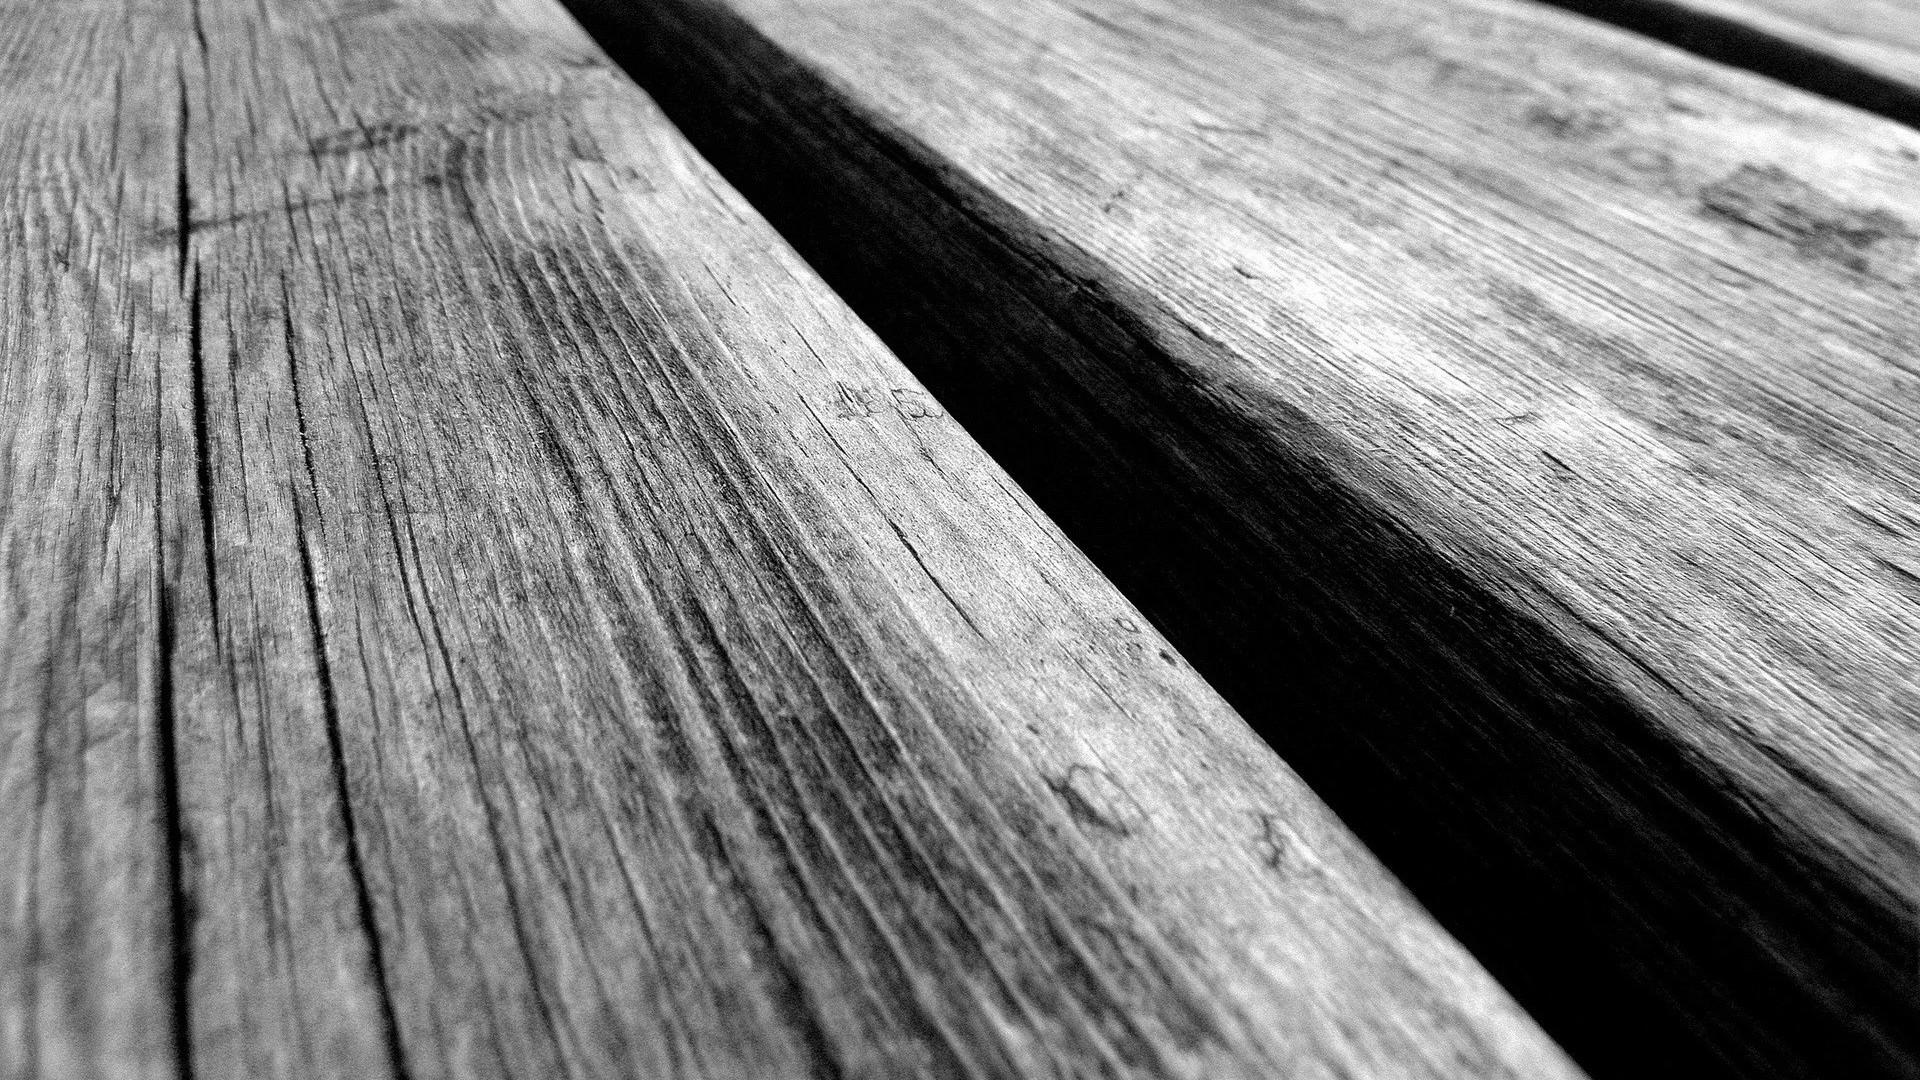 sfondo grigio hd,legna,color legno,legno duro,tavola,pavimento